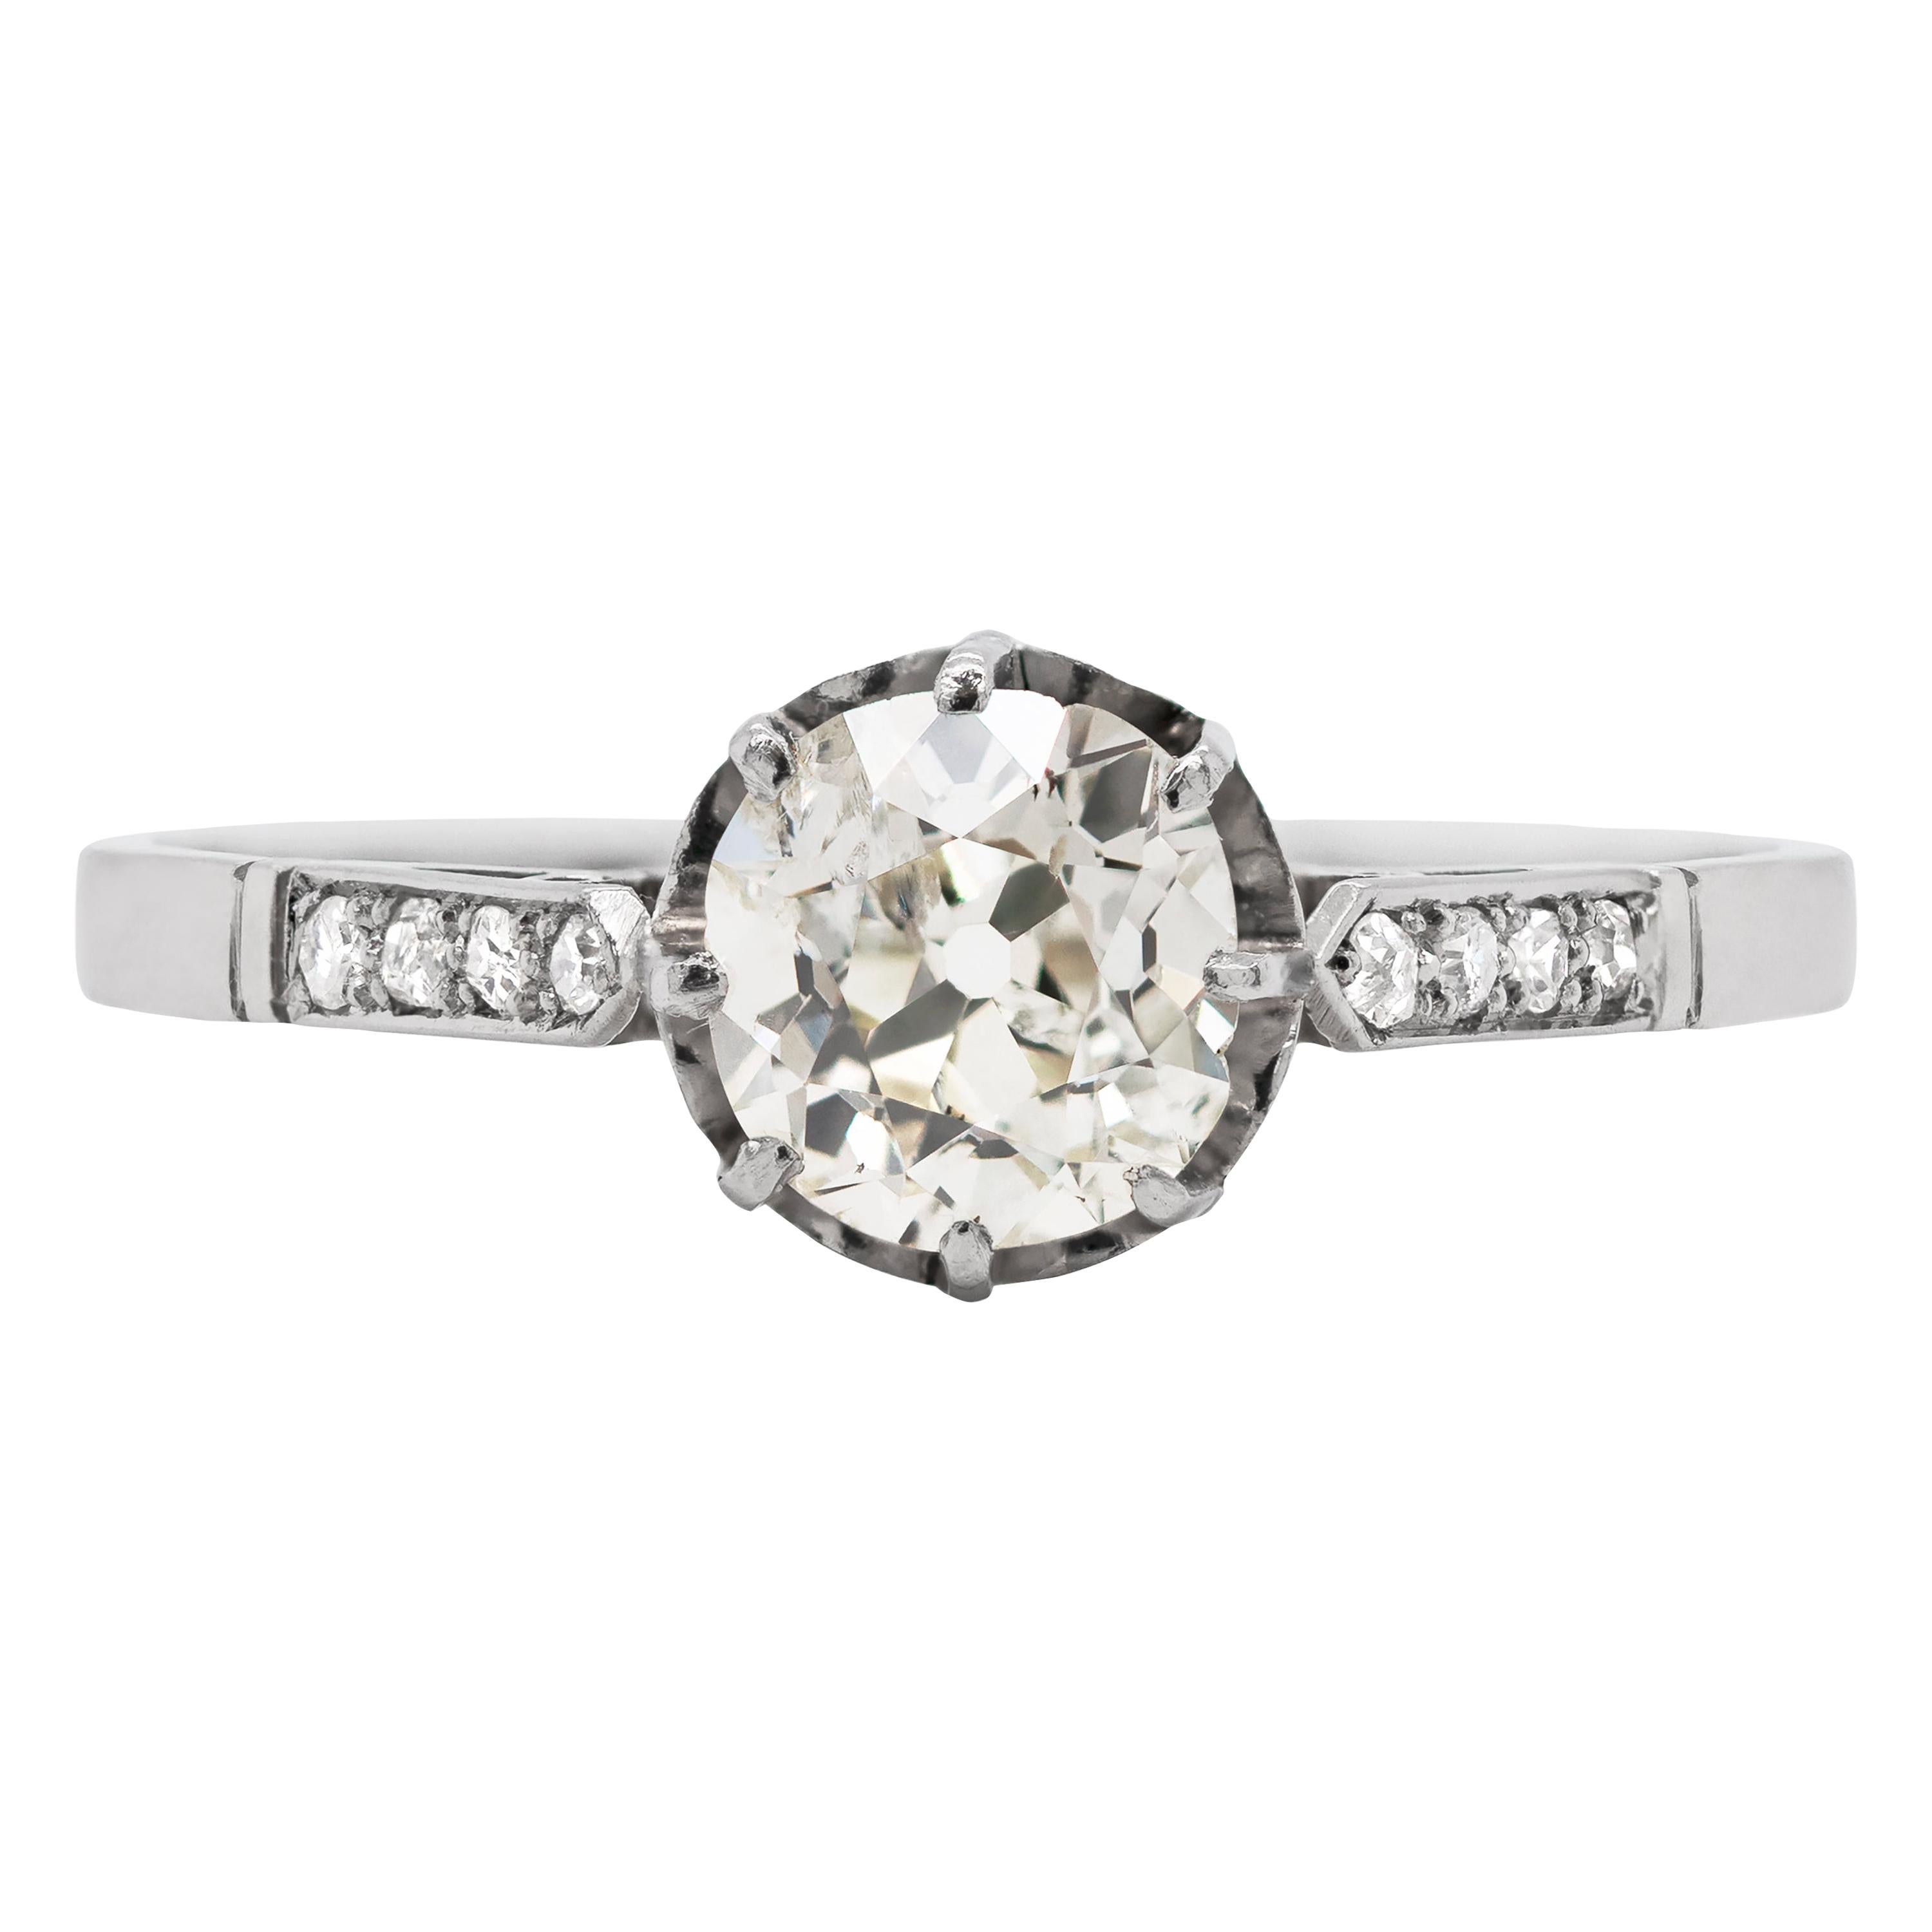 Antique 1.09 Carat Old Cut Diamond Platinum Engagement Ring, circa 1910